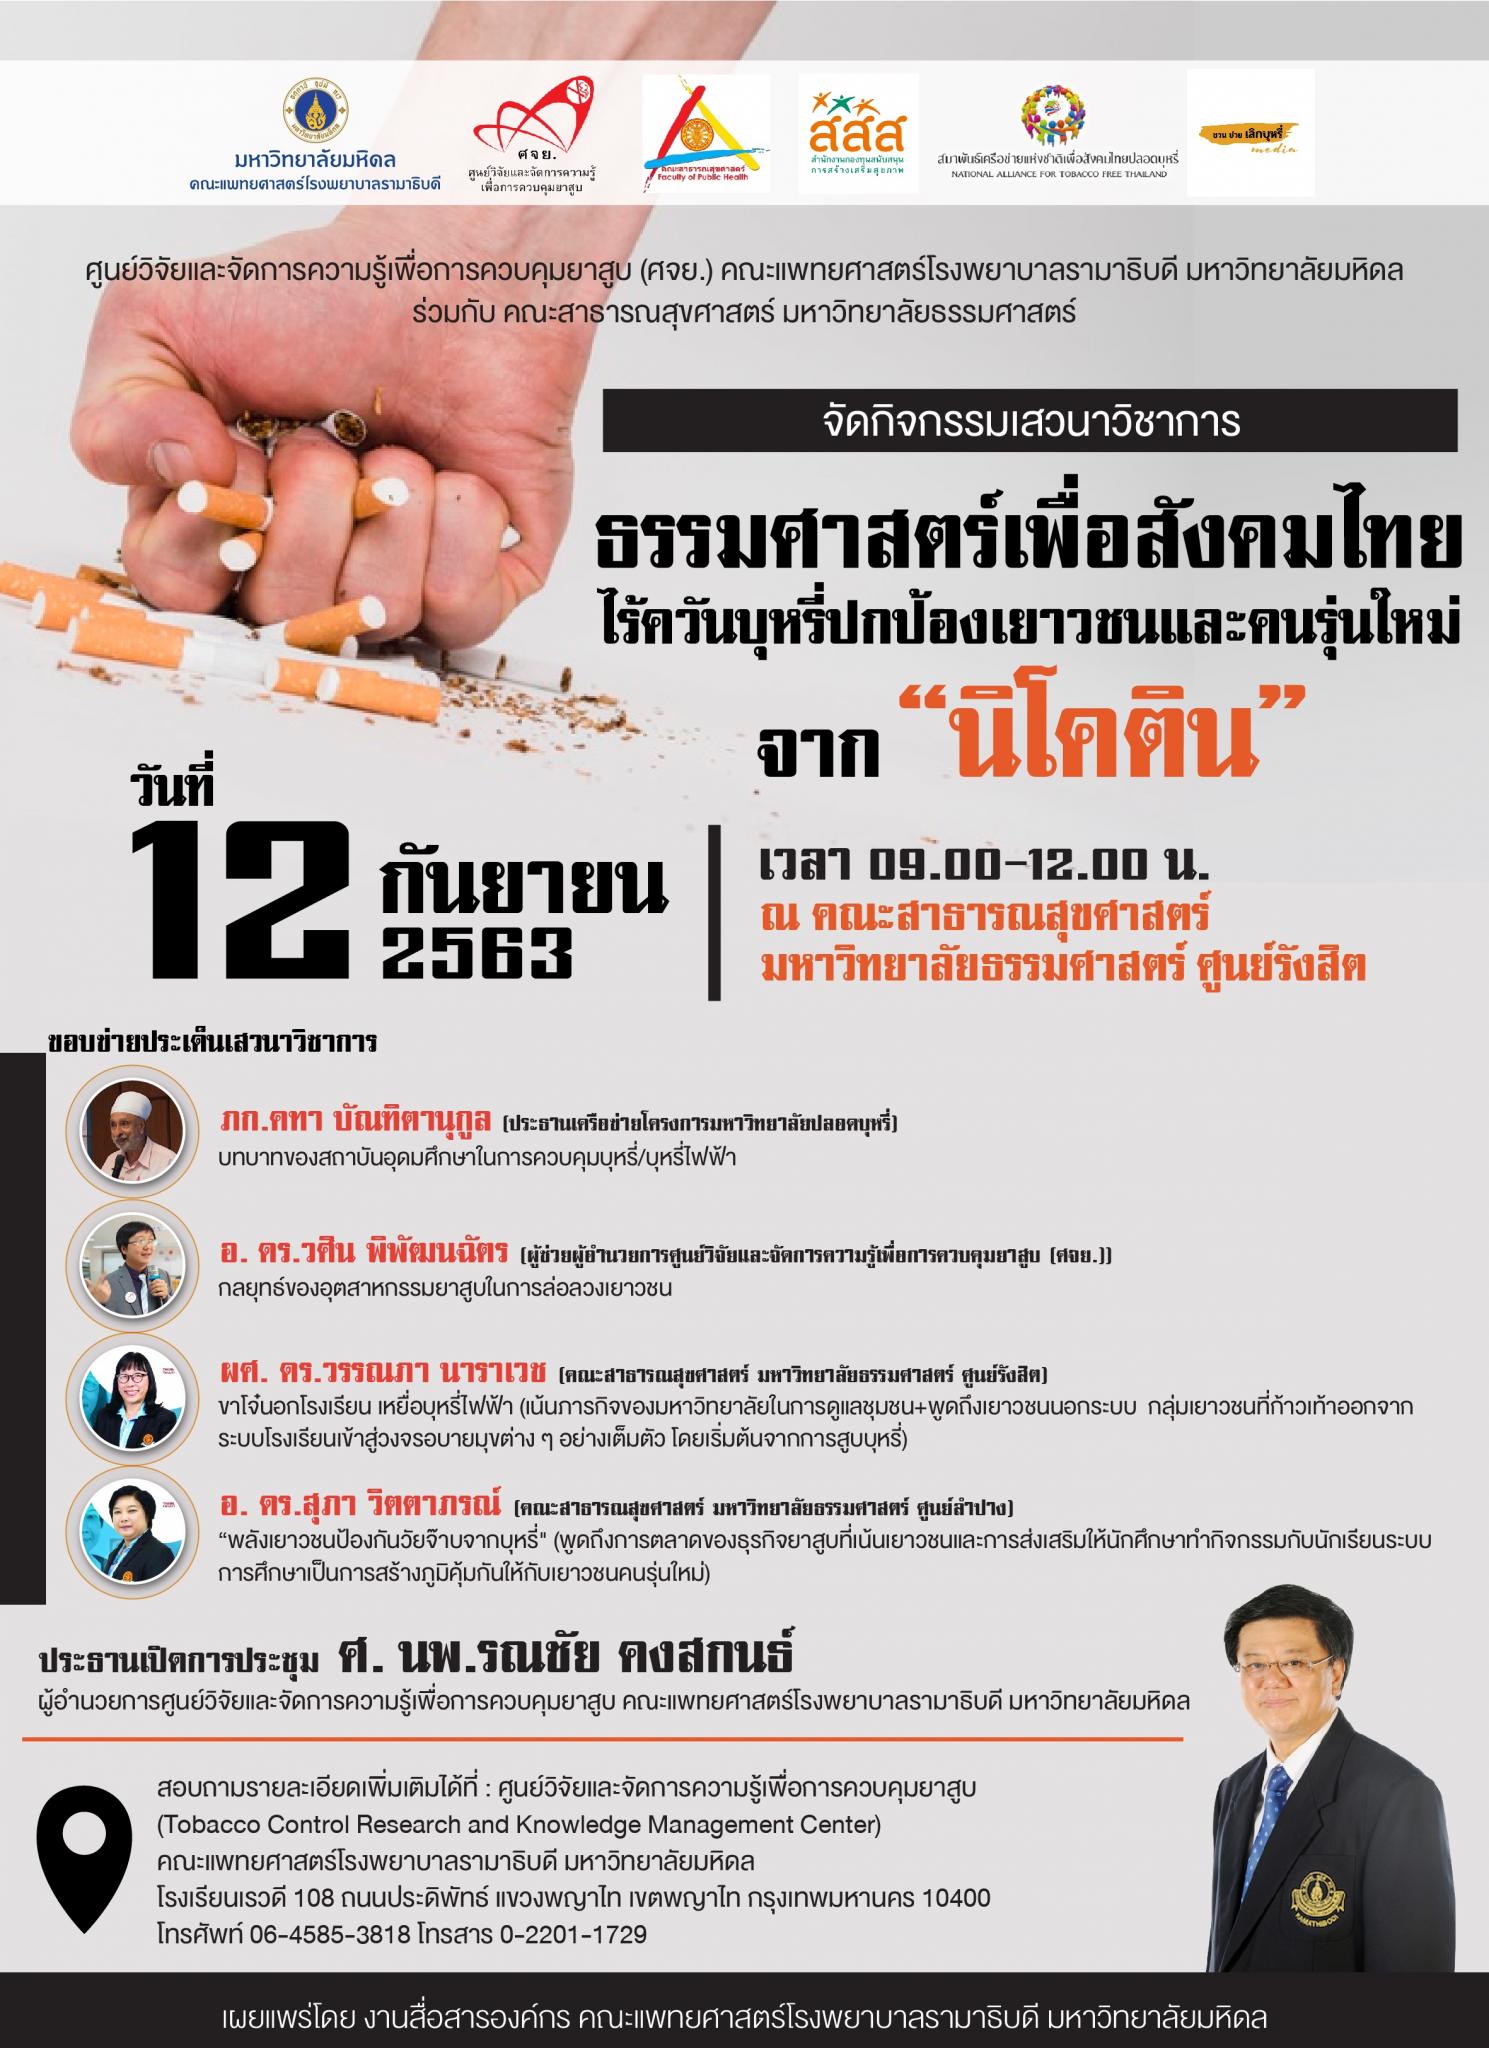 ธรรมศาสตร์เพื่อสังคมไทย ไร้ควันบุหรี่ปกป้องเยาวชนและคนรุ่นใหม่ จาก "นิโคติน"